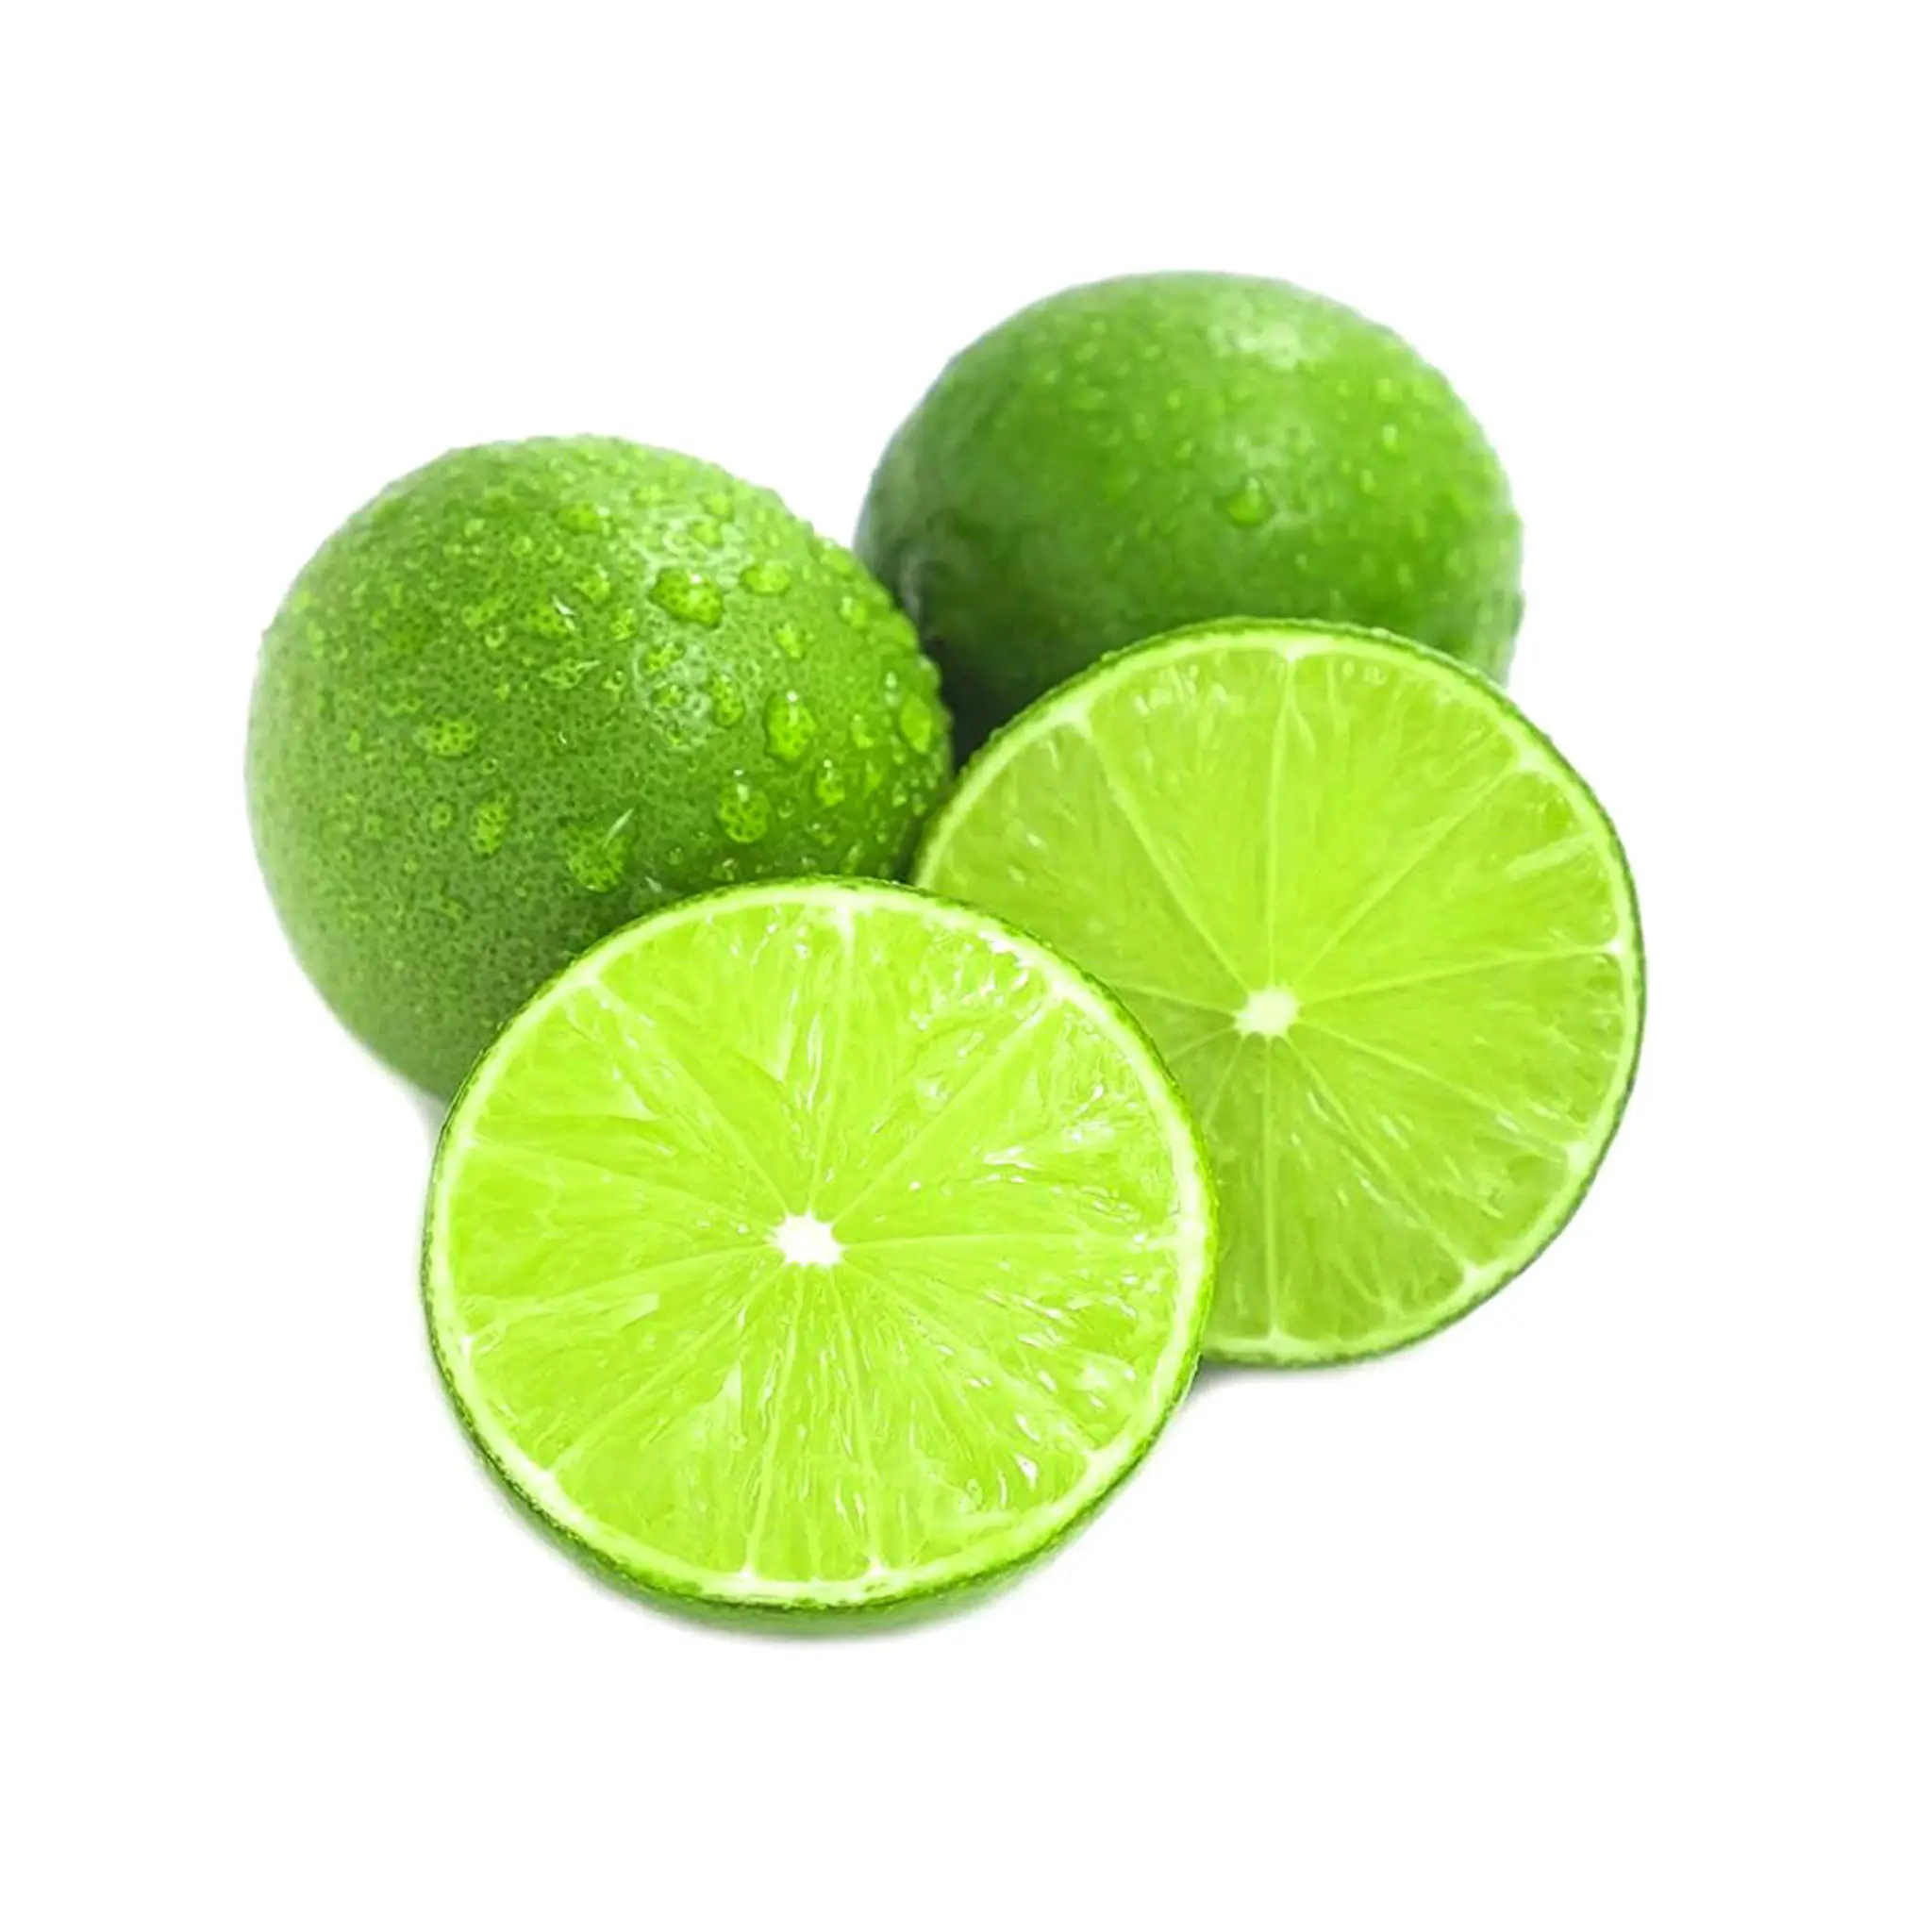 Senza semi di colore verde Lime naturale limone del Vietnam frutta fresca agrumi miglior prezzo da Ms. Elysia Whatsapp 0084789310321